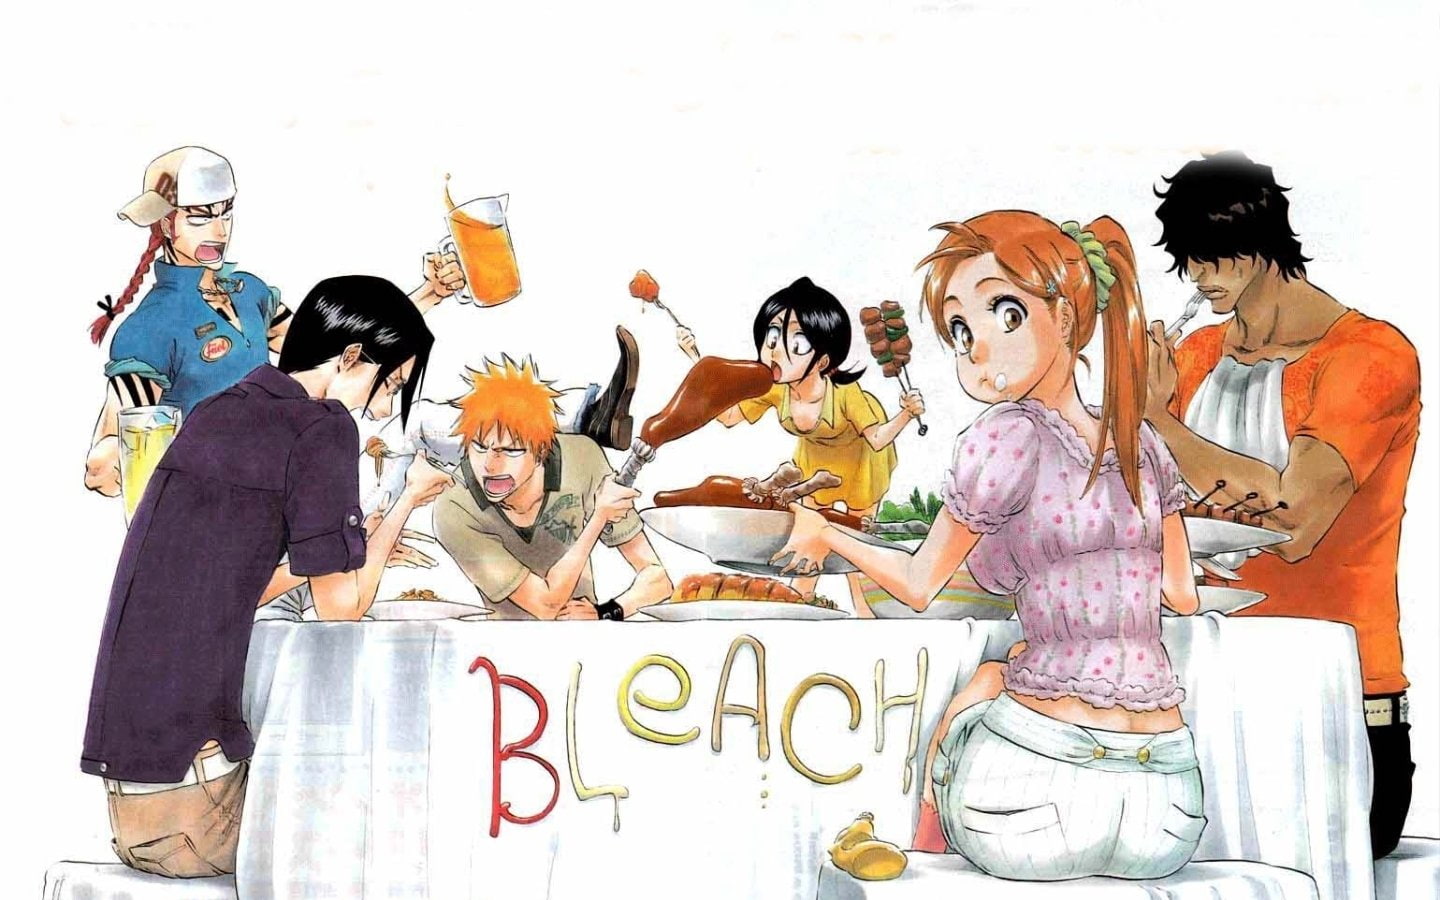 Bleach, Ichigo Kurosaki, Orihime Inoue, Renji Abarai, Rukia Kuchiki